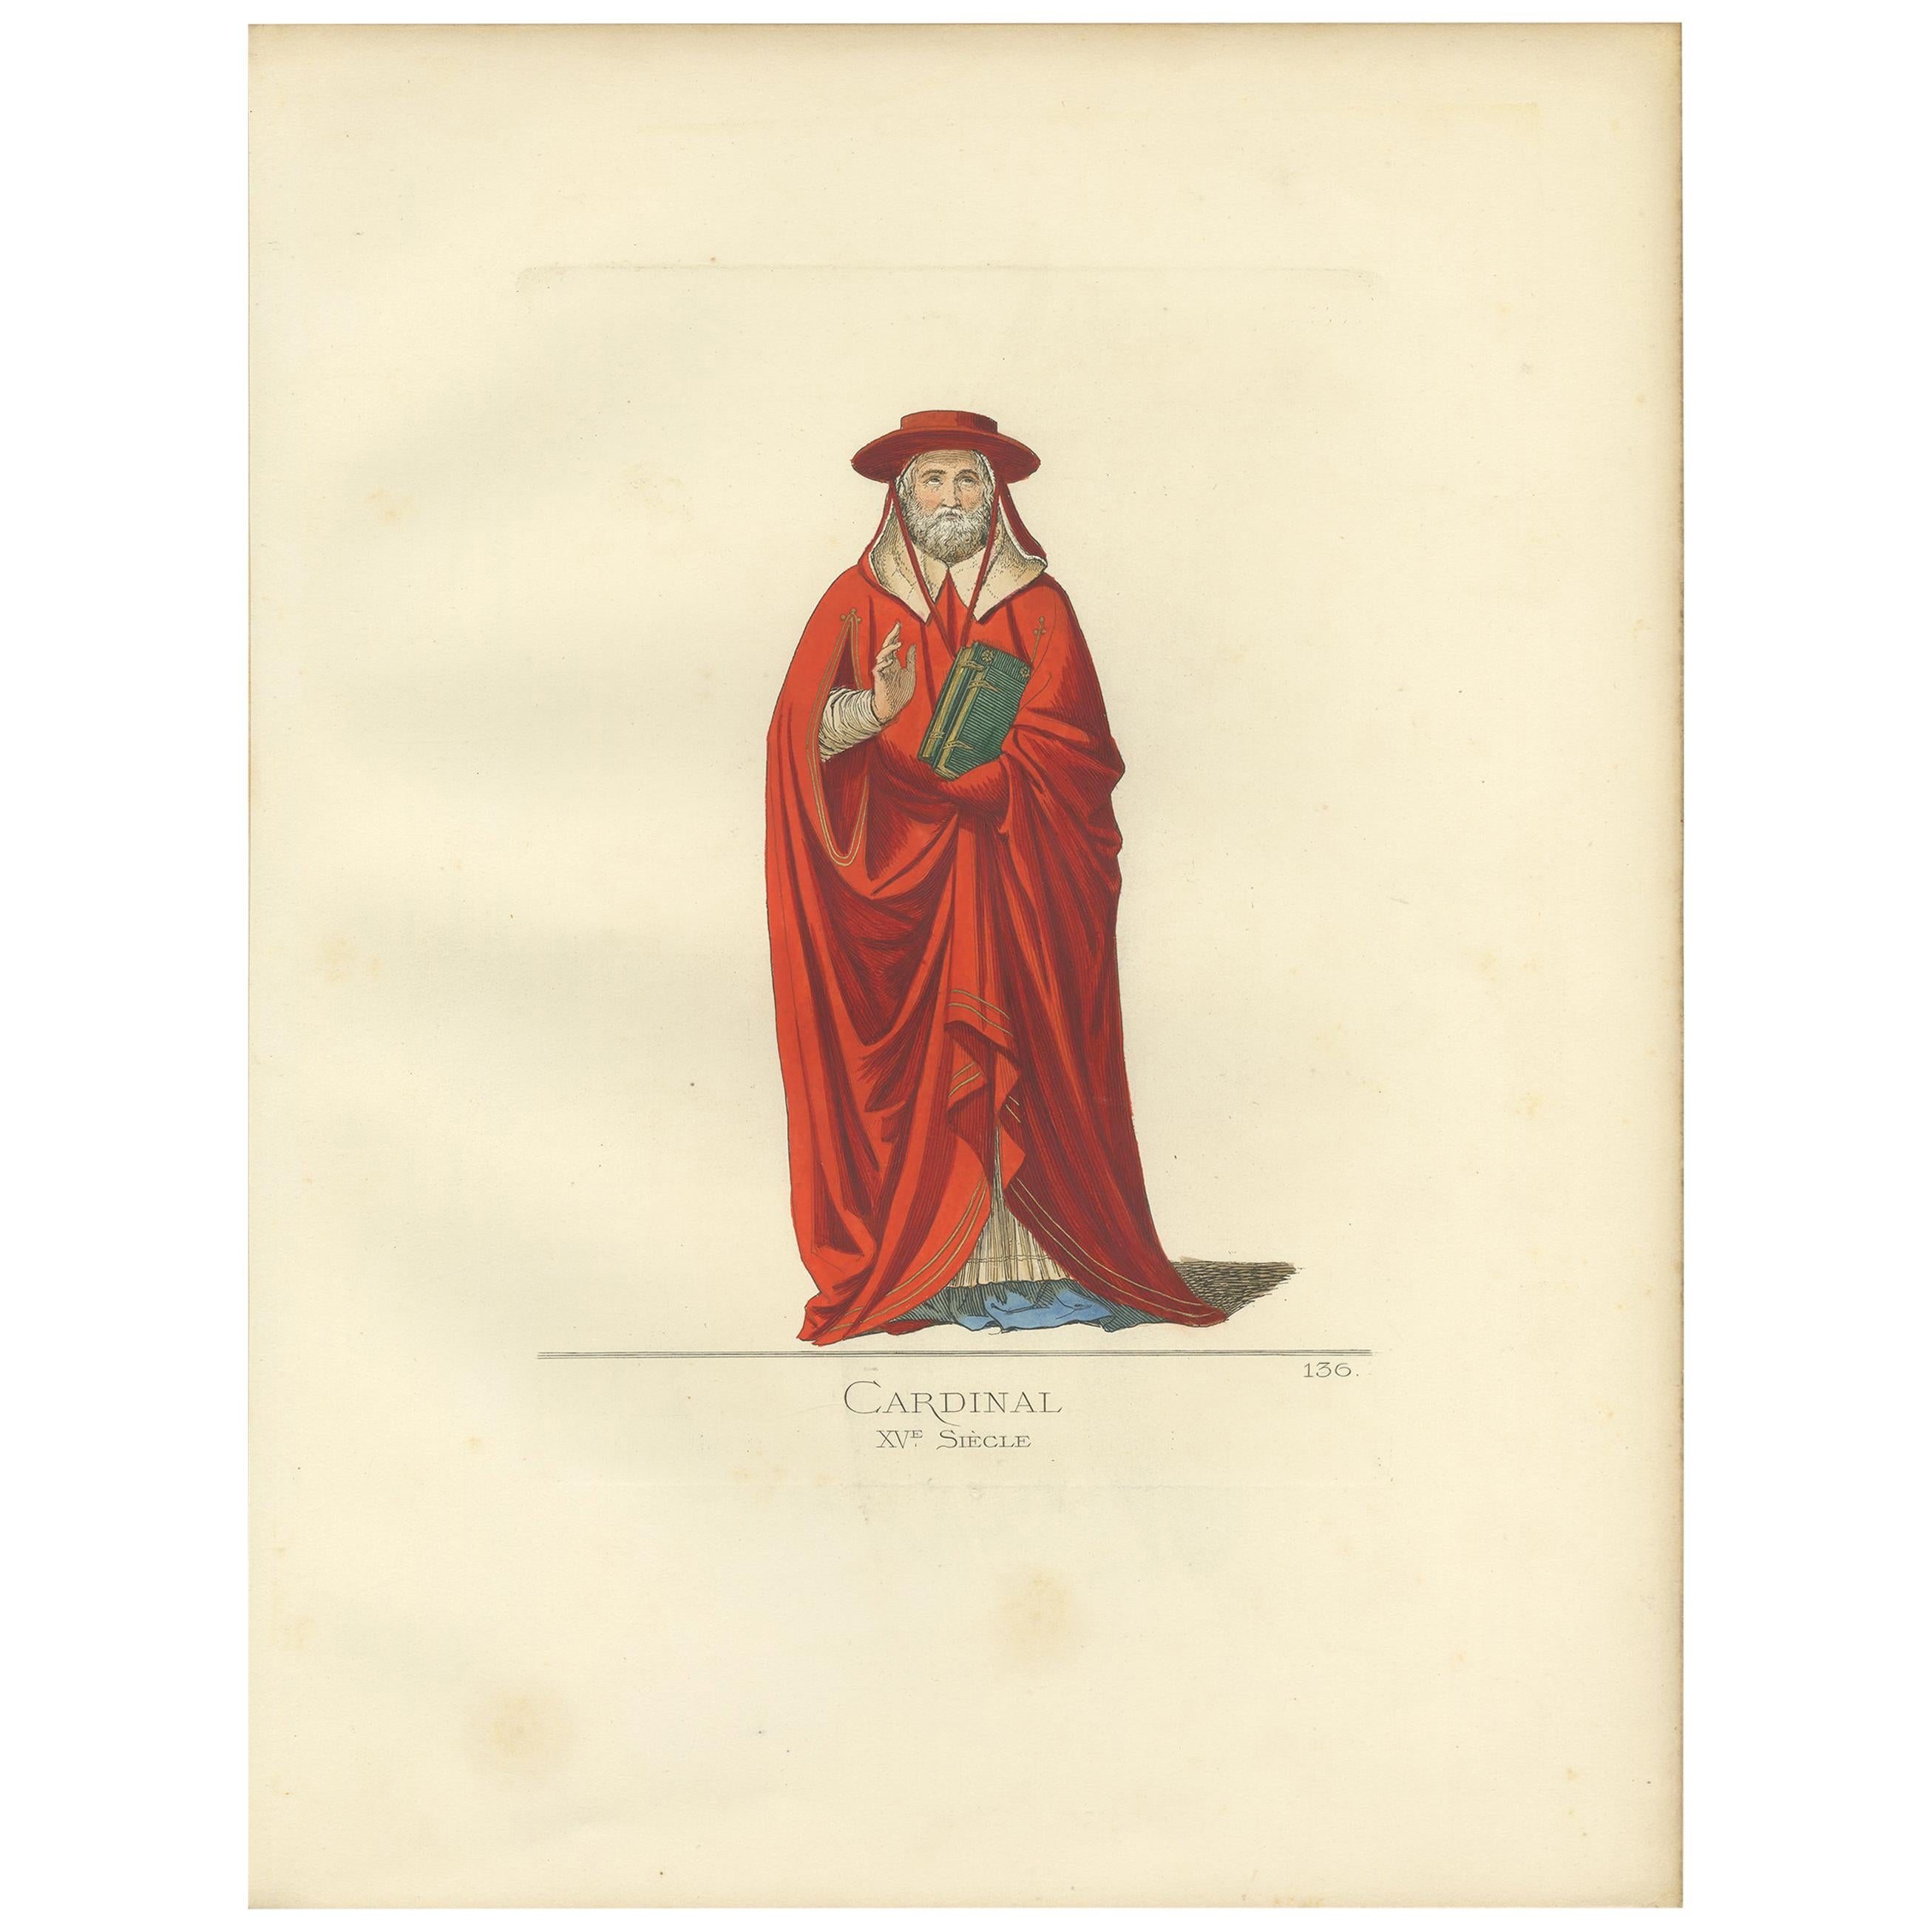 Antique print titled ‘Cardinal, XVe Siecle.’ Original antique print of a cardinal, 15th century. This print originates from 'Costumes historiques de femmes du XIII, XIV et XV siècle' by C. Bonnard. Published, 1860.